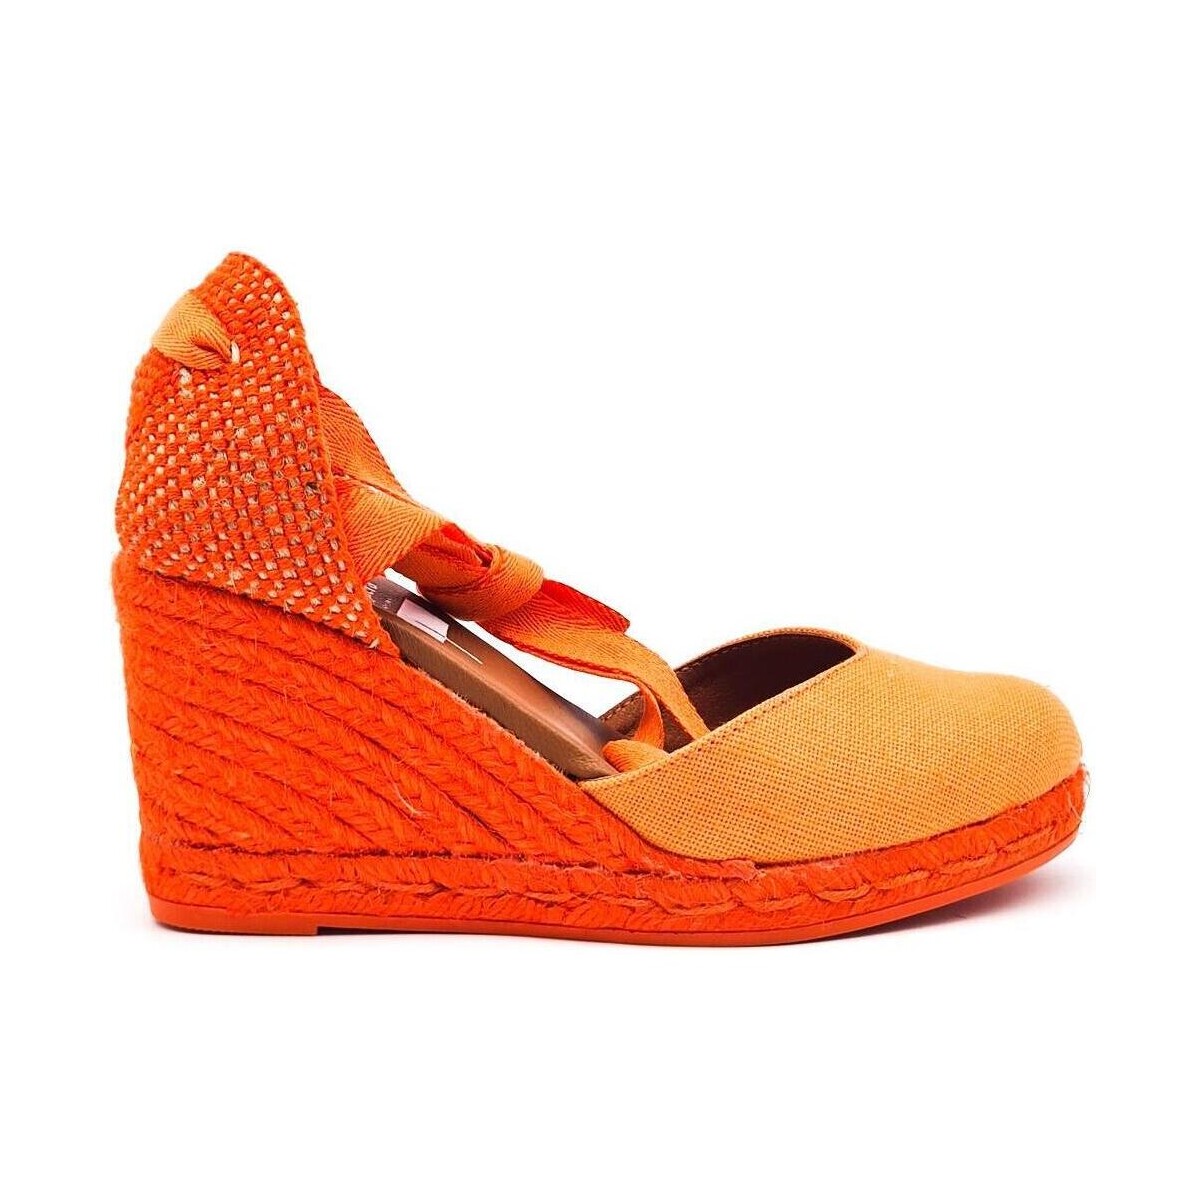 Zapatos Mujer Zapatos para el agua Viguera 1939 Naranja